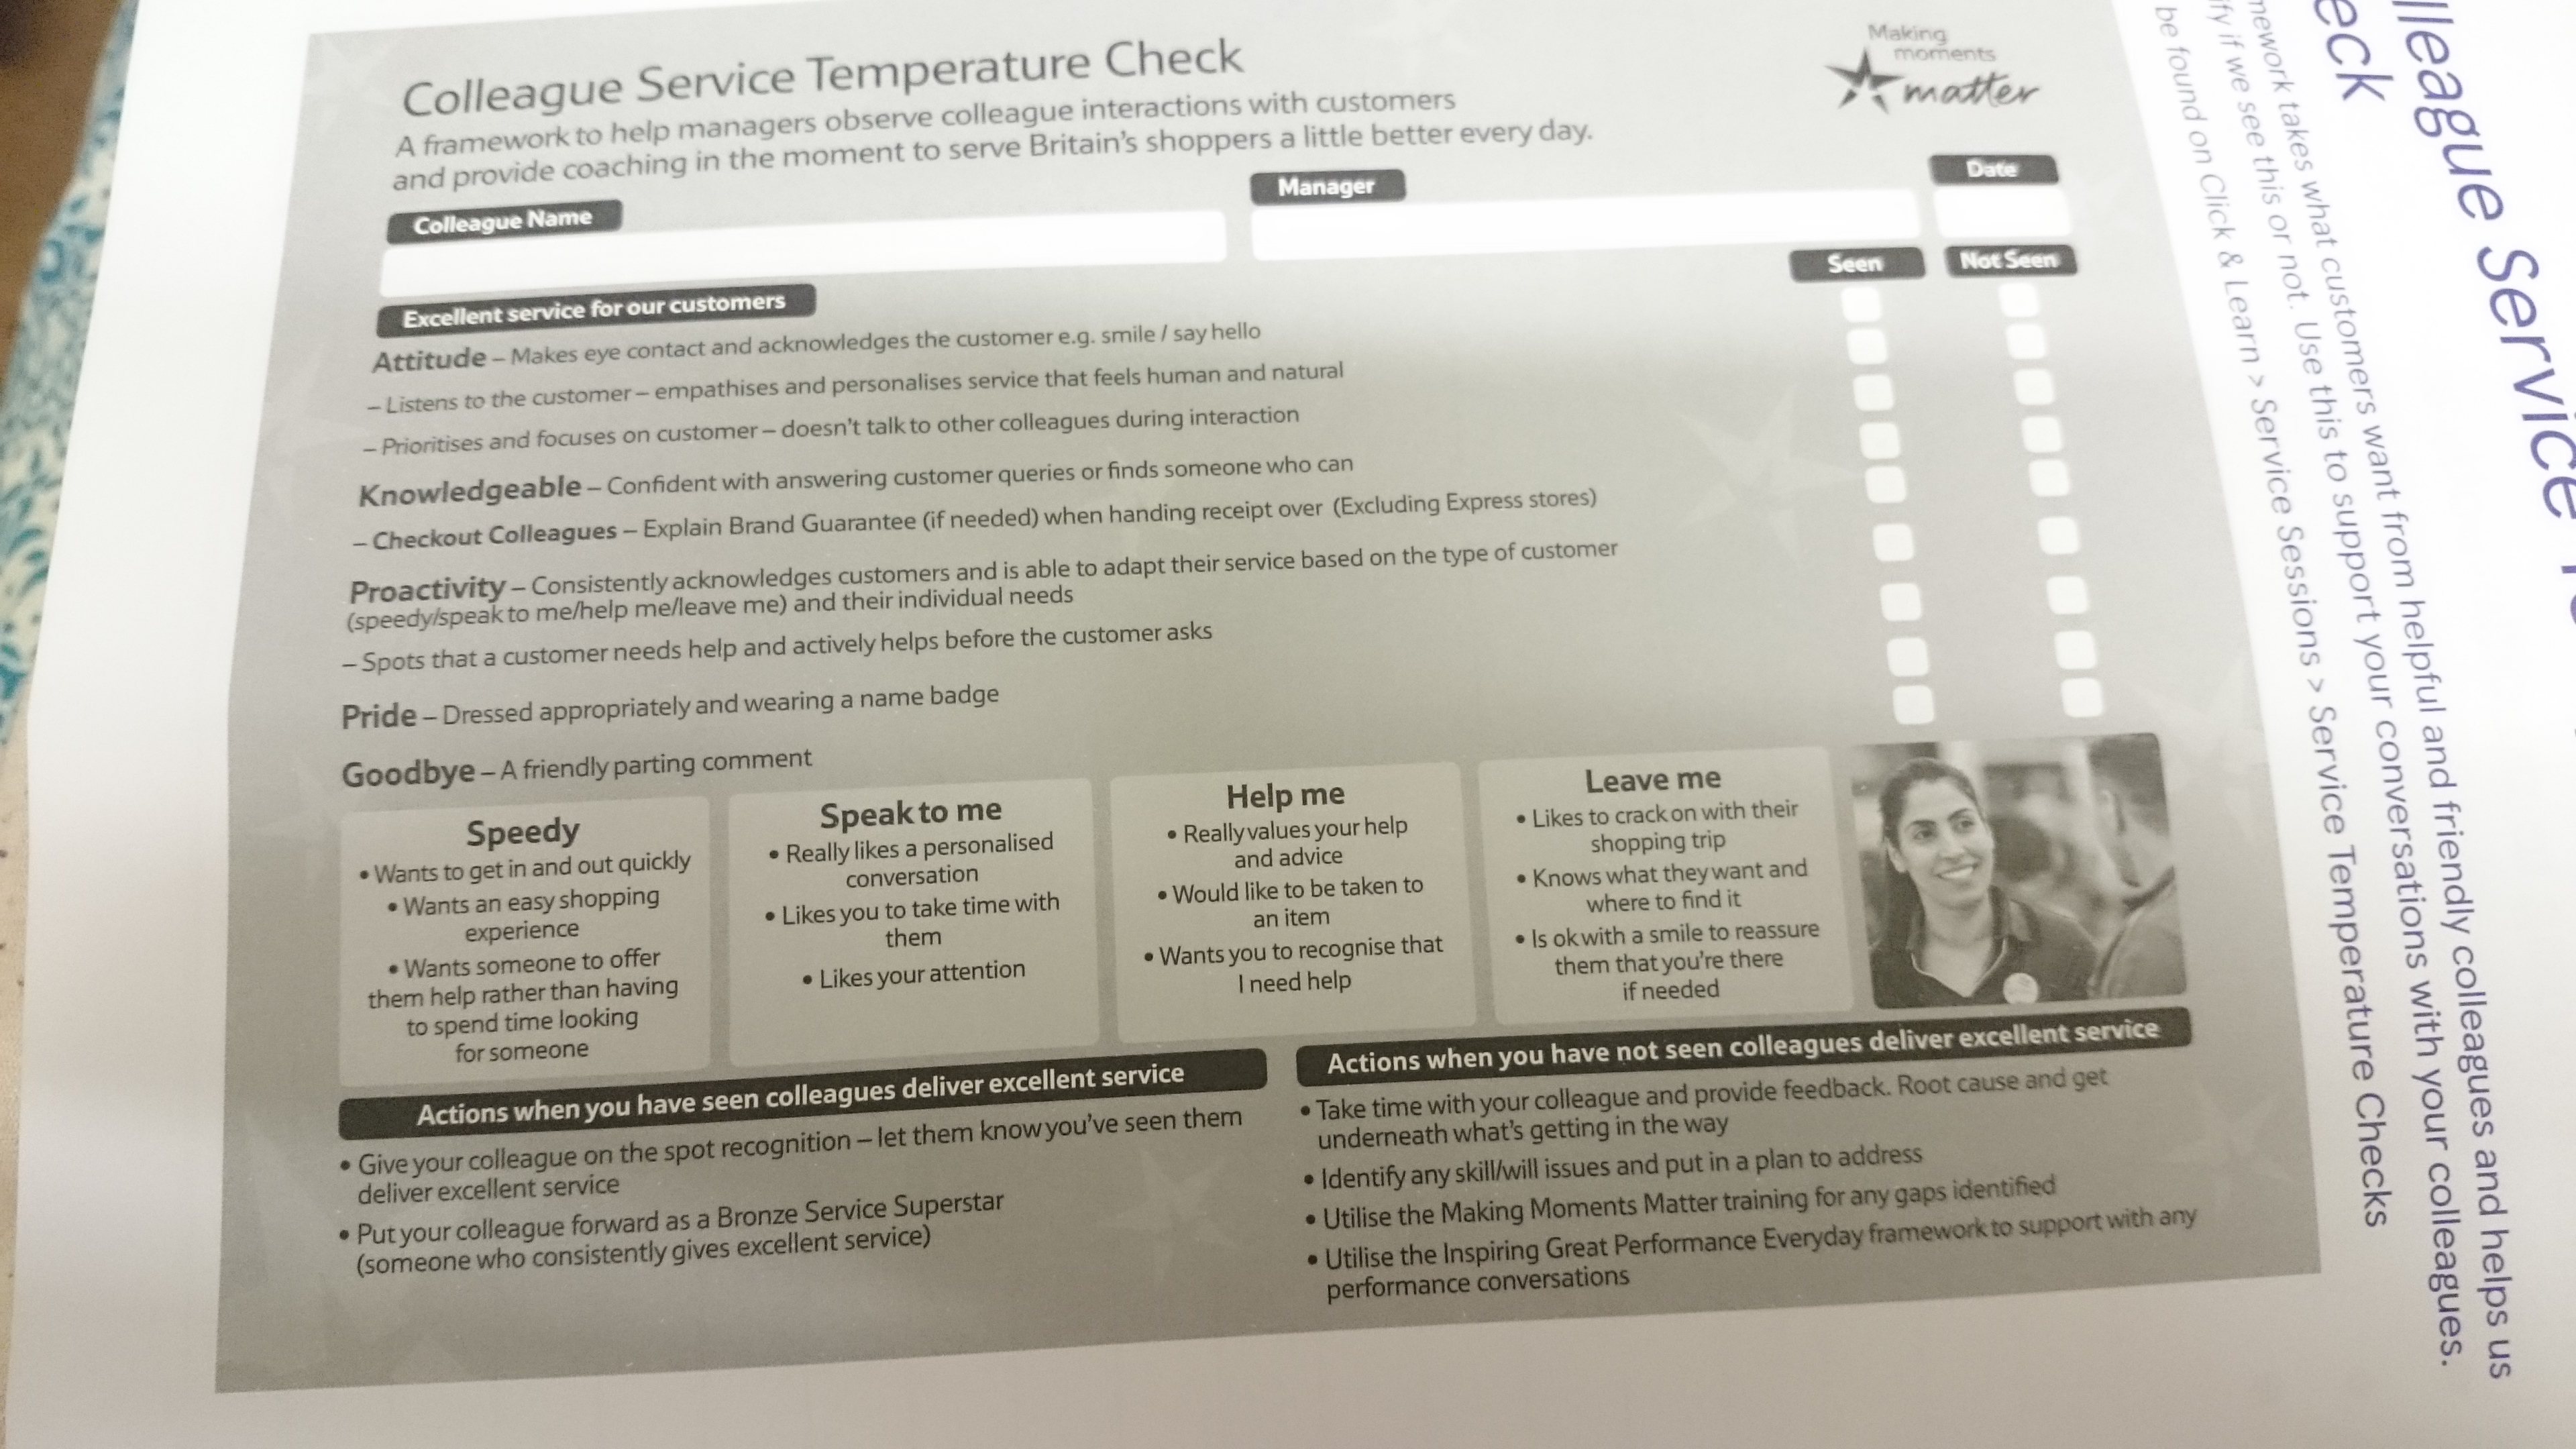 Colleague Service Temperature Check 